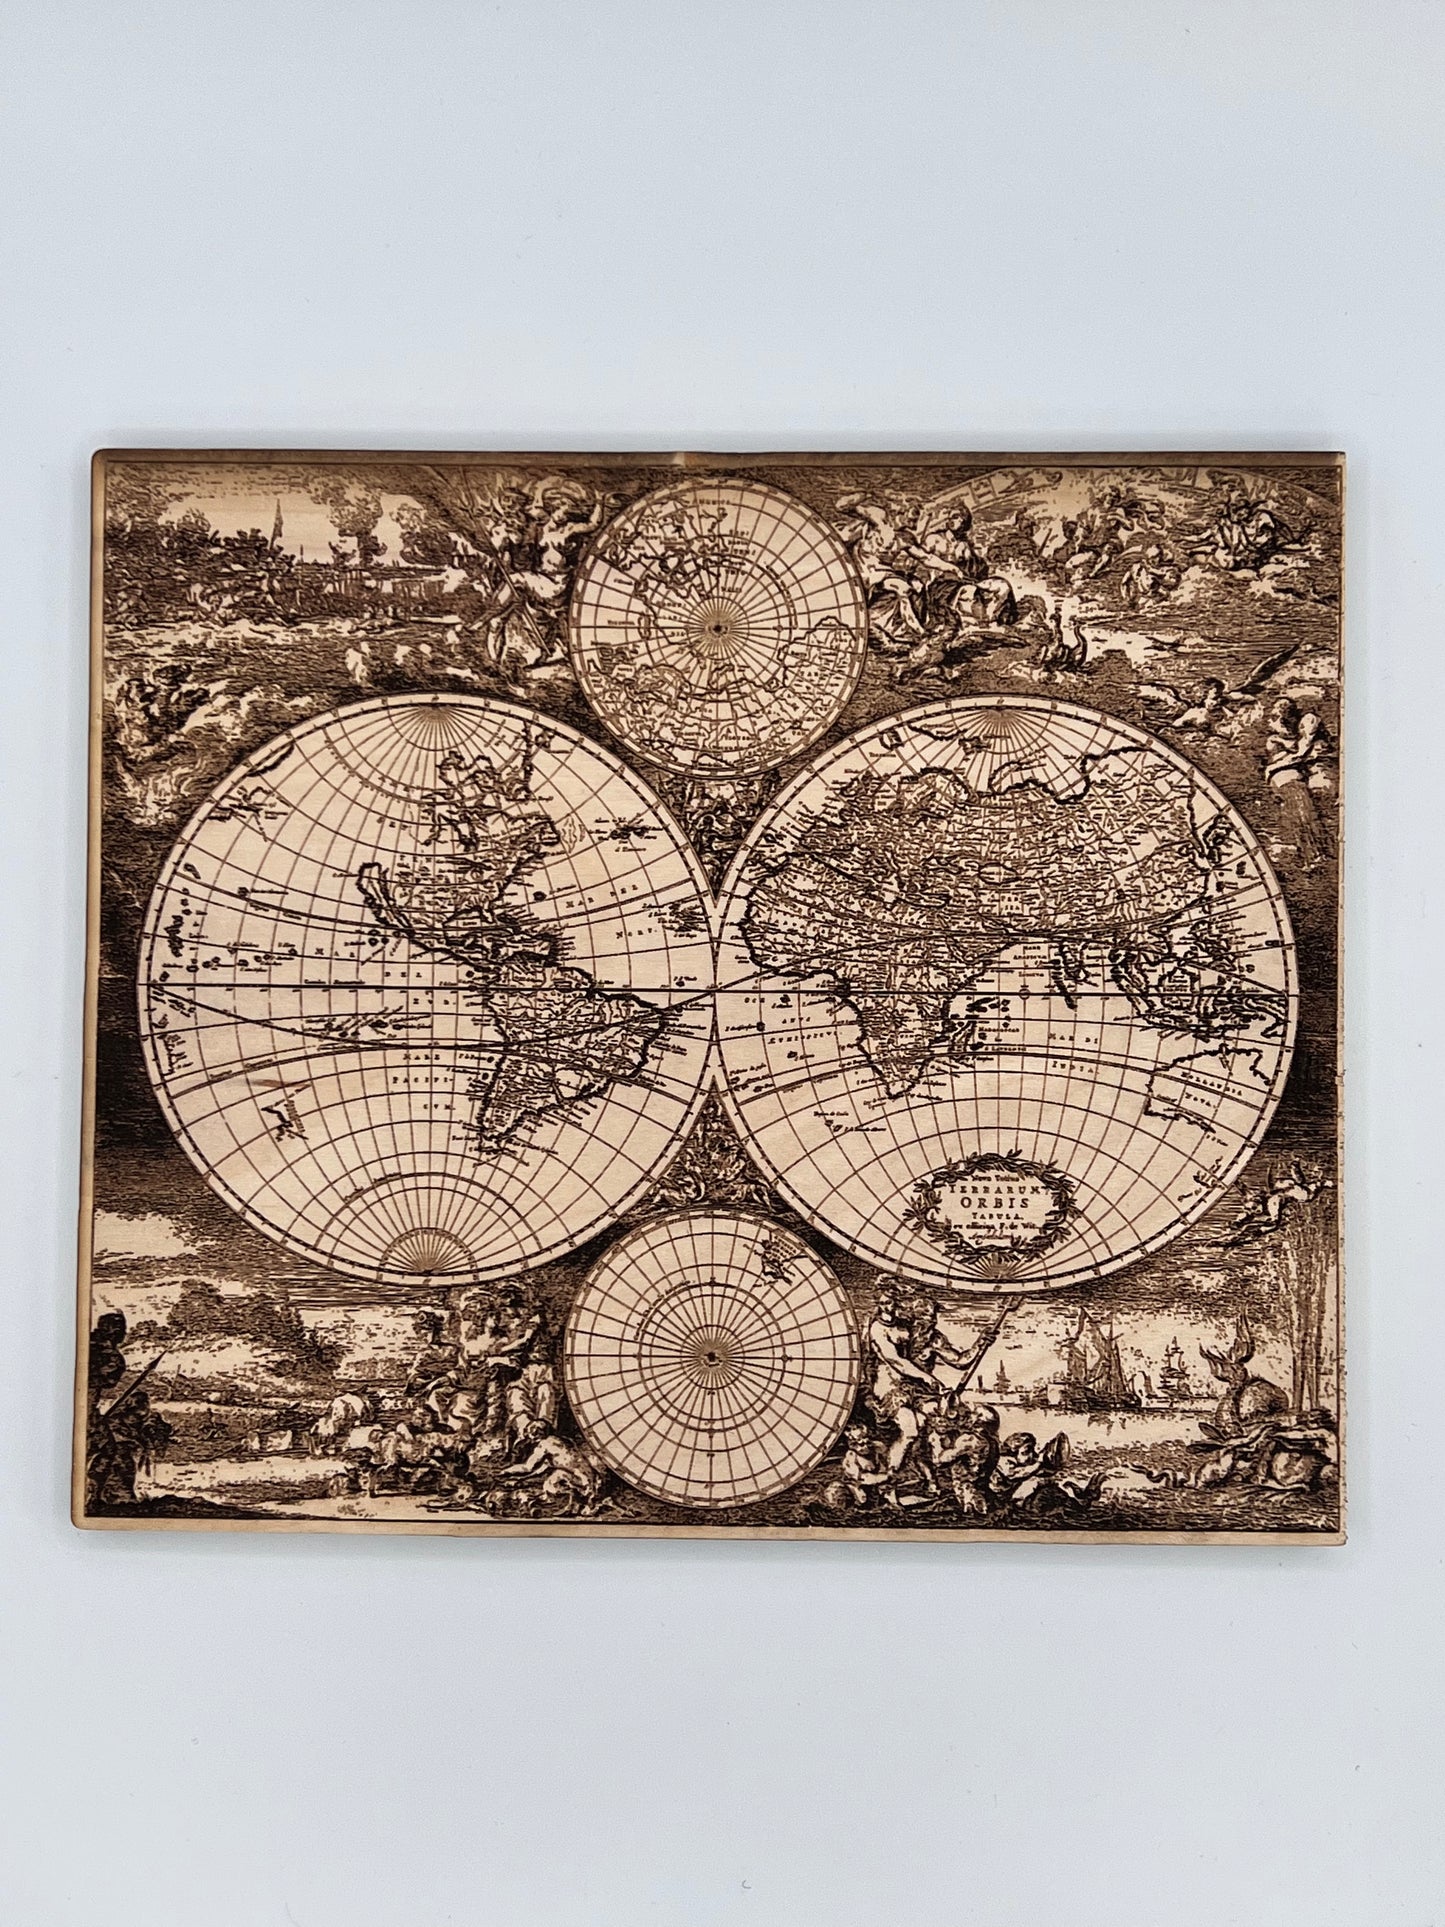 Vintage Old World Map, Wood Engraved